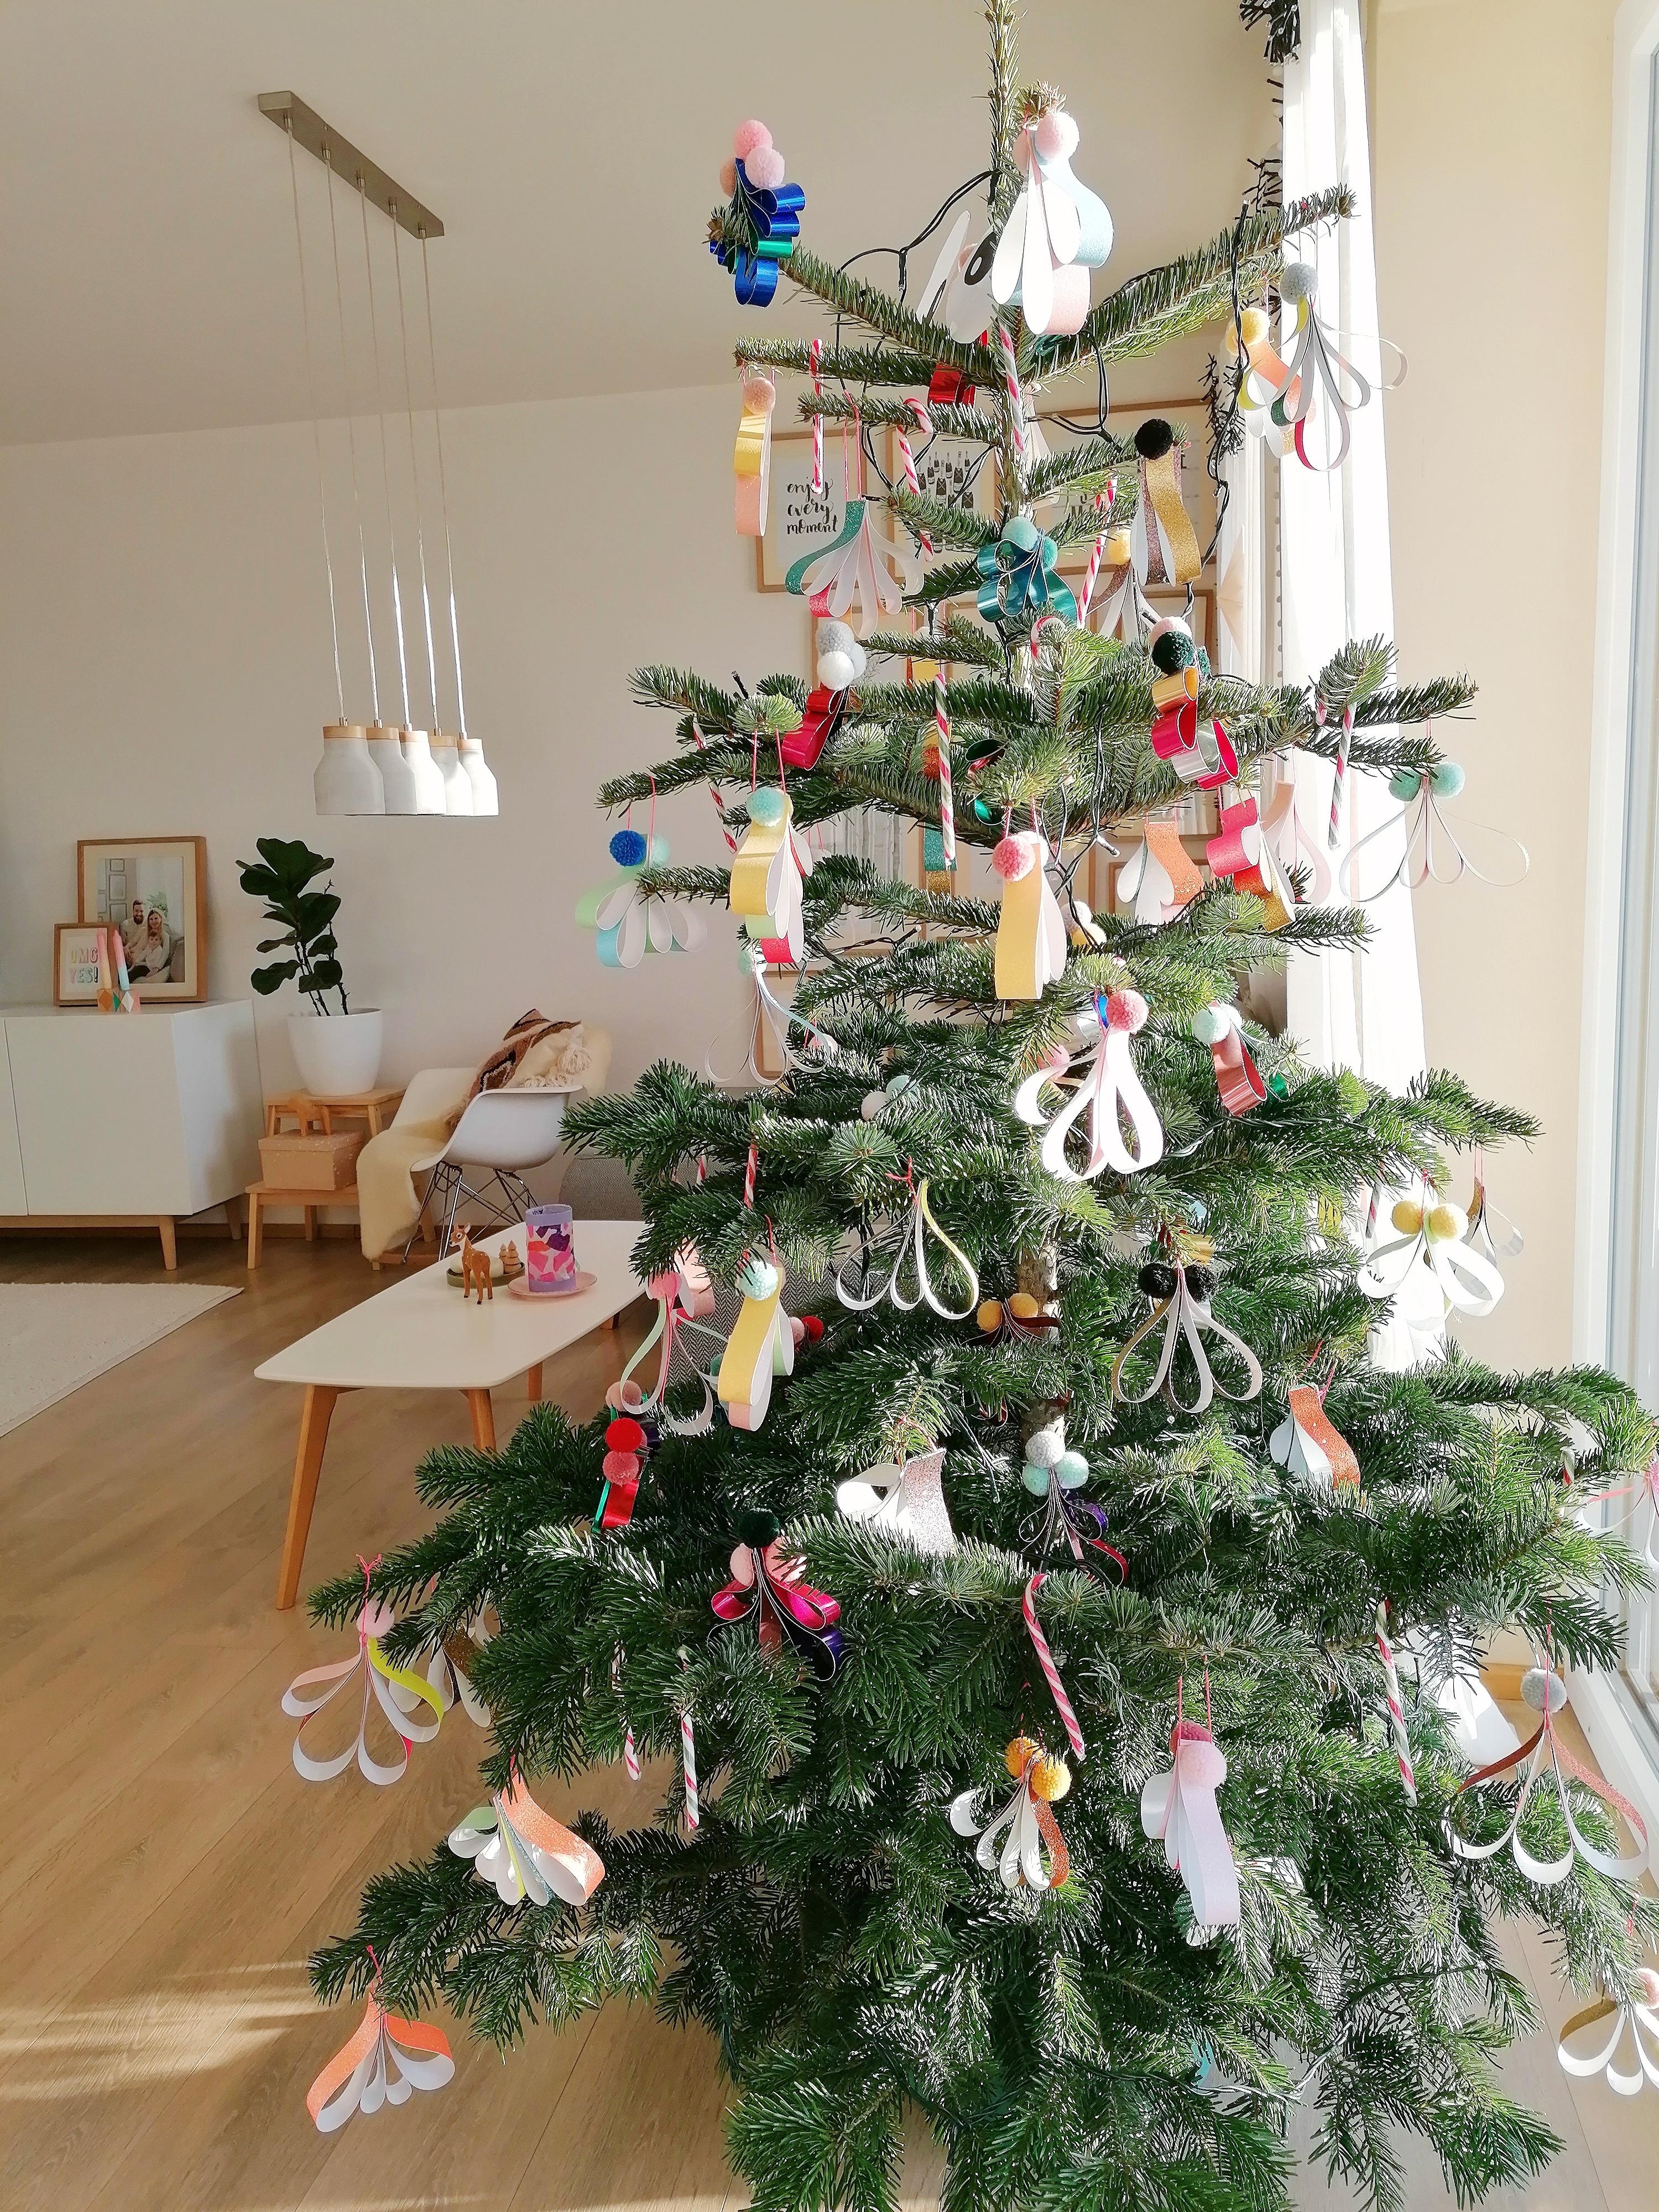 Ich liebe Kitsch am Baum!
#weihnachtsbaum#weihnachten#kitsch#christmas 